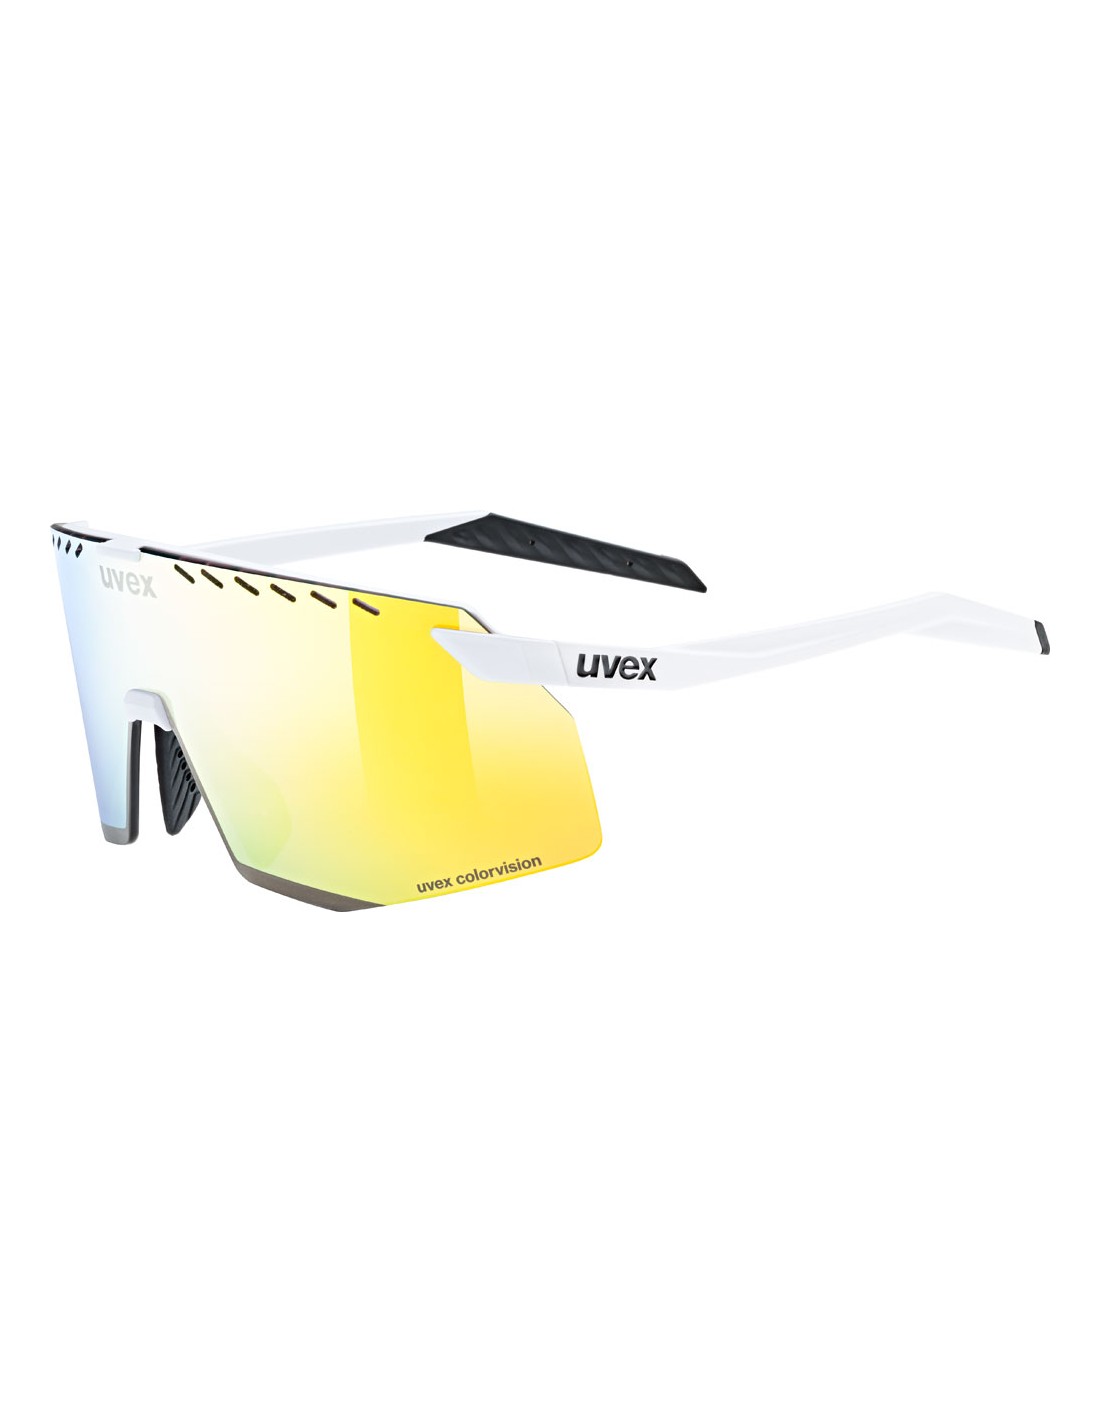 Uvex Sportbrille Pace Stage CV, white matt, uvex colorvision mirror yellow Cat. 3 yummy yellow von Uvex